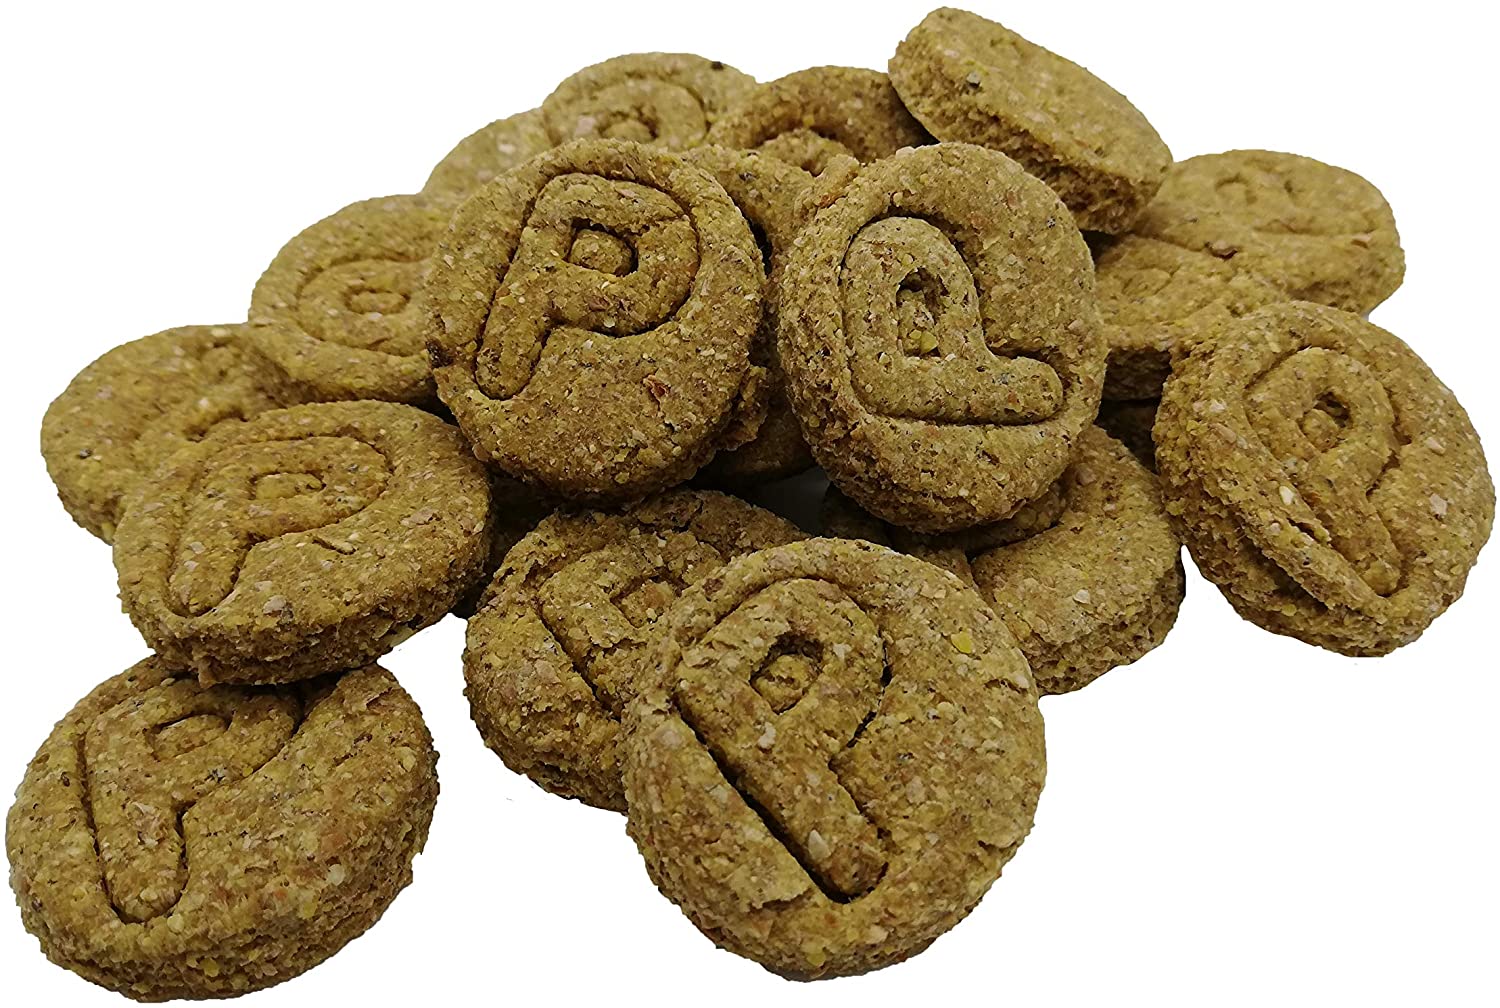  Waniyanpi Snacks para la Piel y Pelaje 600g (3 Cajas x 200g)|Snacks para Regular y Proteger el sebo de la Piel de los Perros| con Aceite de Salmón 